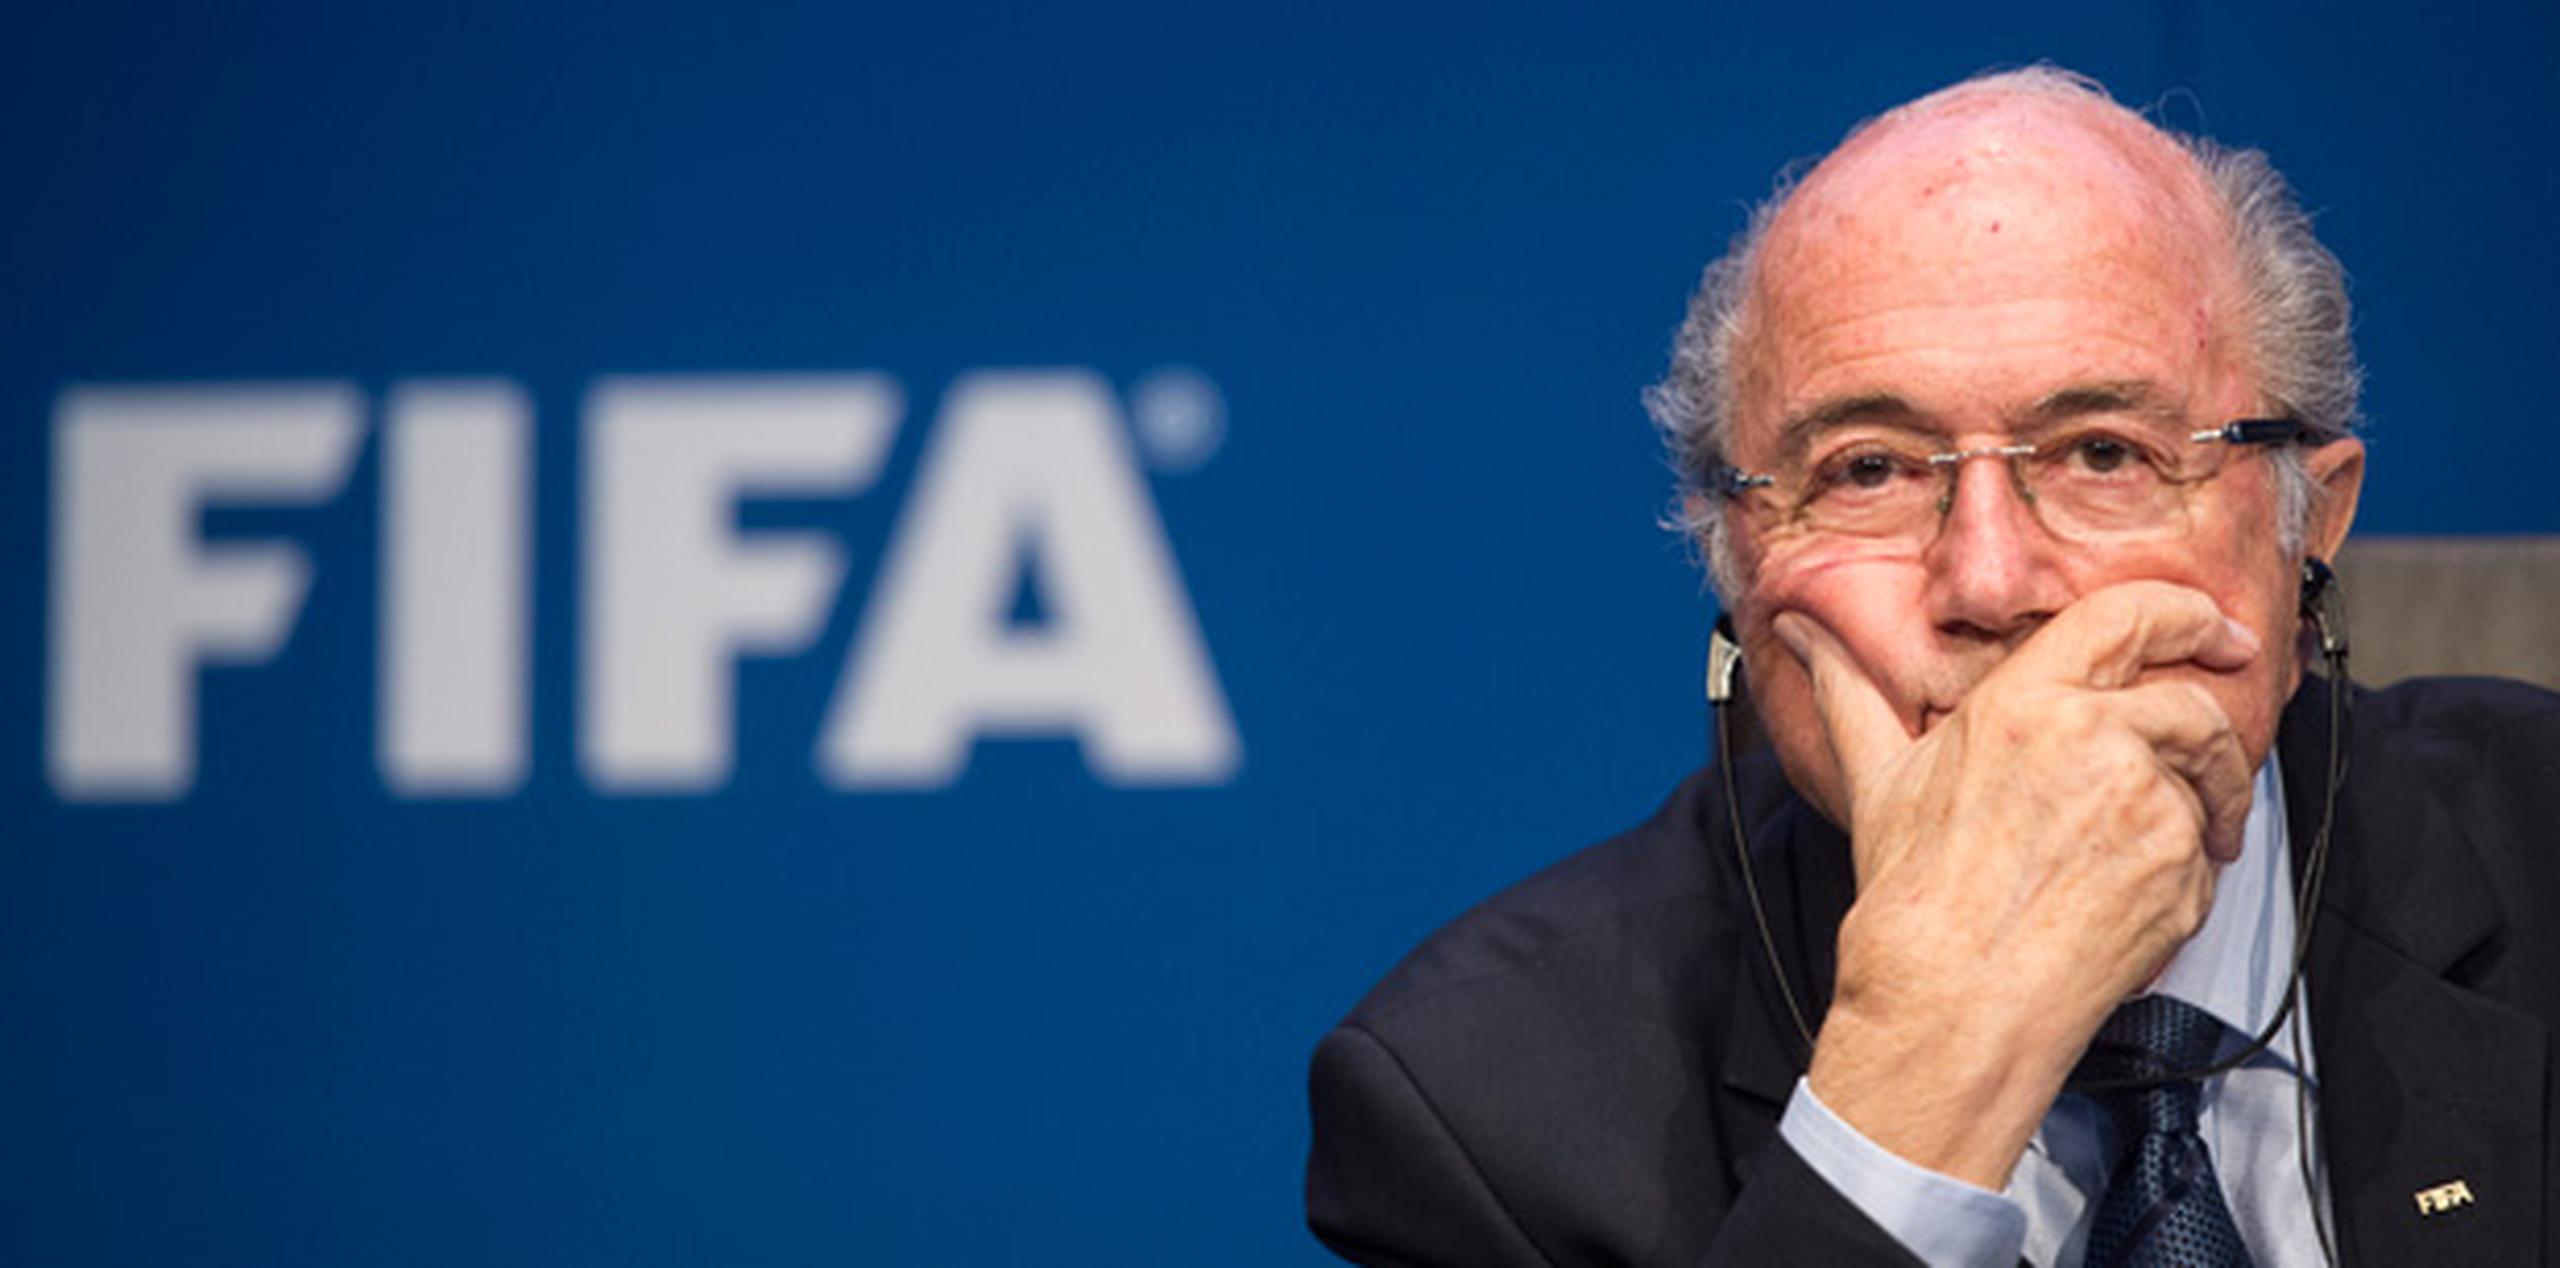 Blatter dijo que "hay algo que huele" mal con relación al momento en que se realizaron las redadas al amanecer para arrestar a funcionarios del fútbol en Zurich dos días antes de que él fuera reelegido el viernes. (AP)